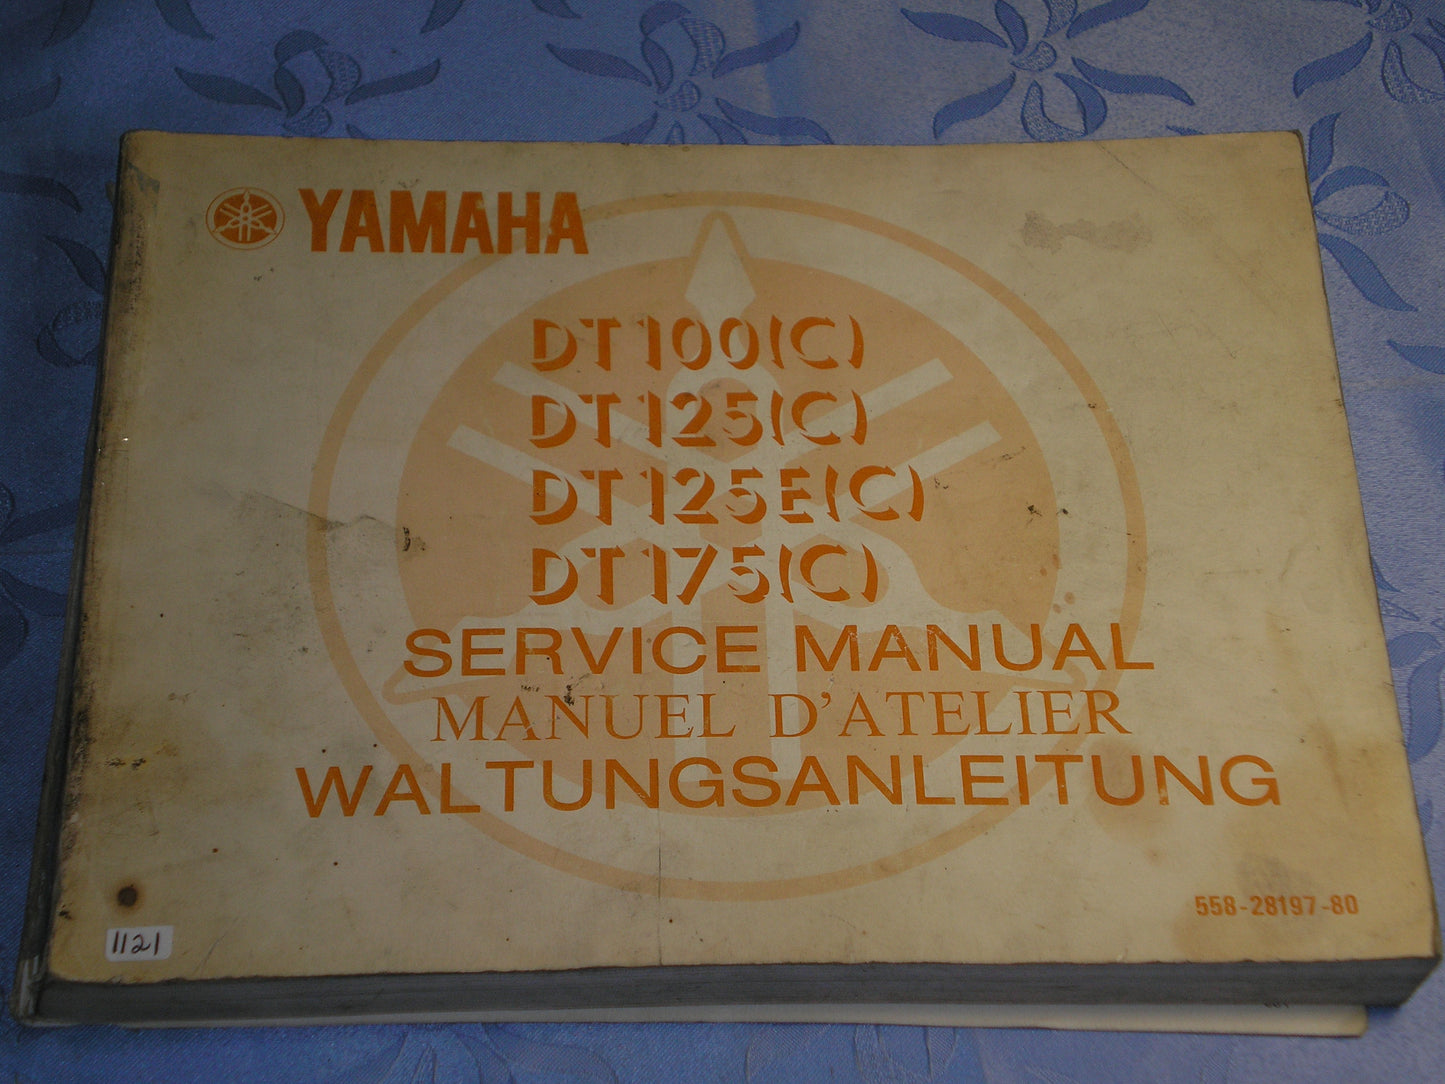 YAMAHA DT100  DT125  DT175 C 1976  Service Manual  558-28197-80  #1121